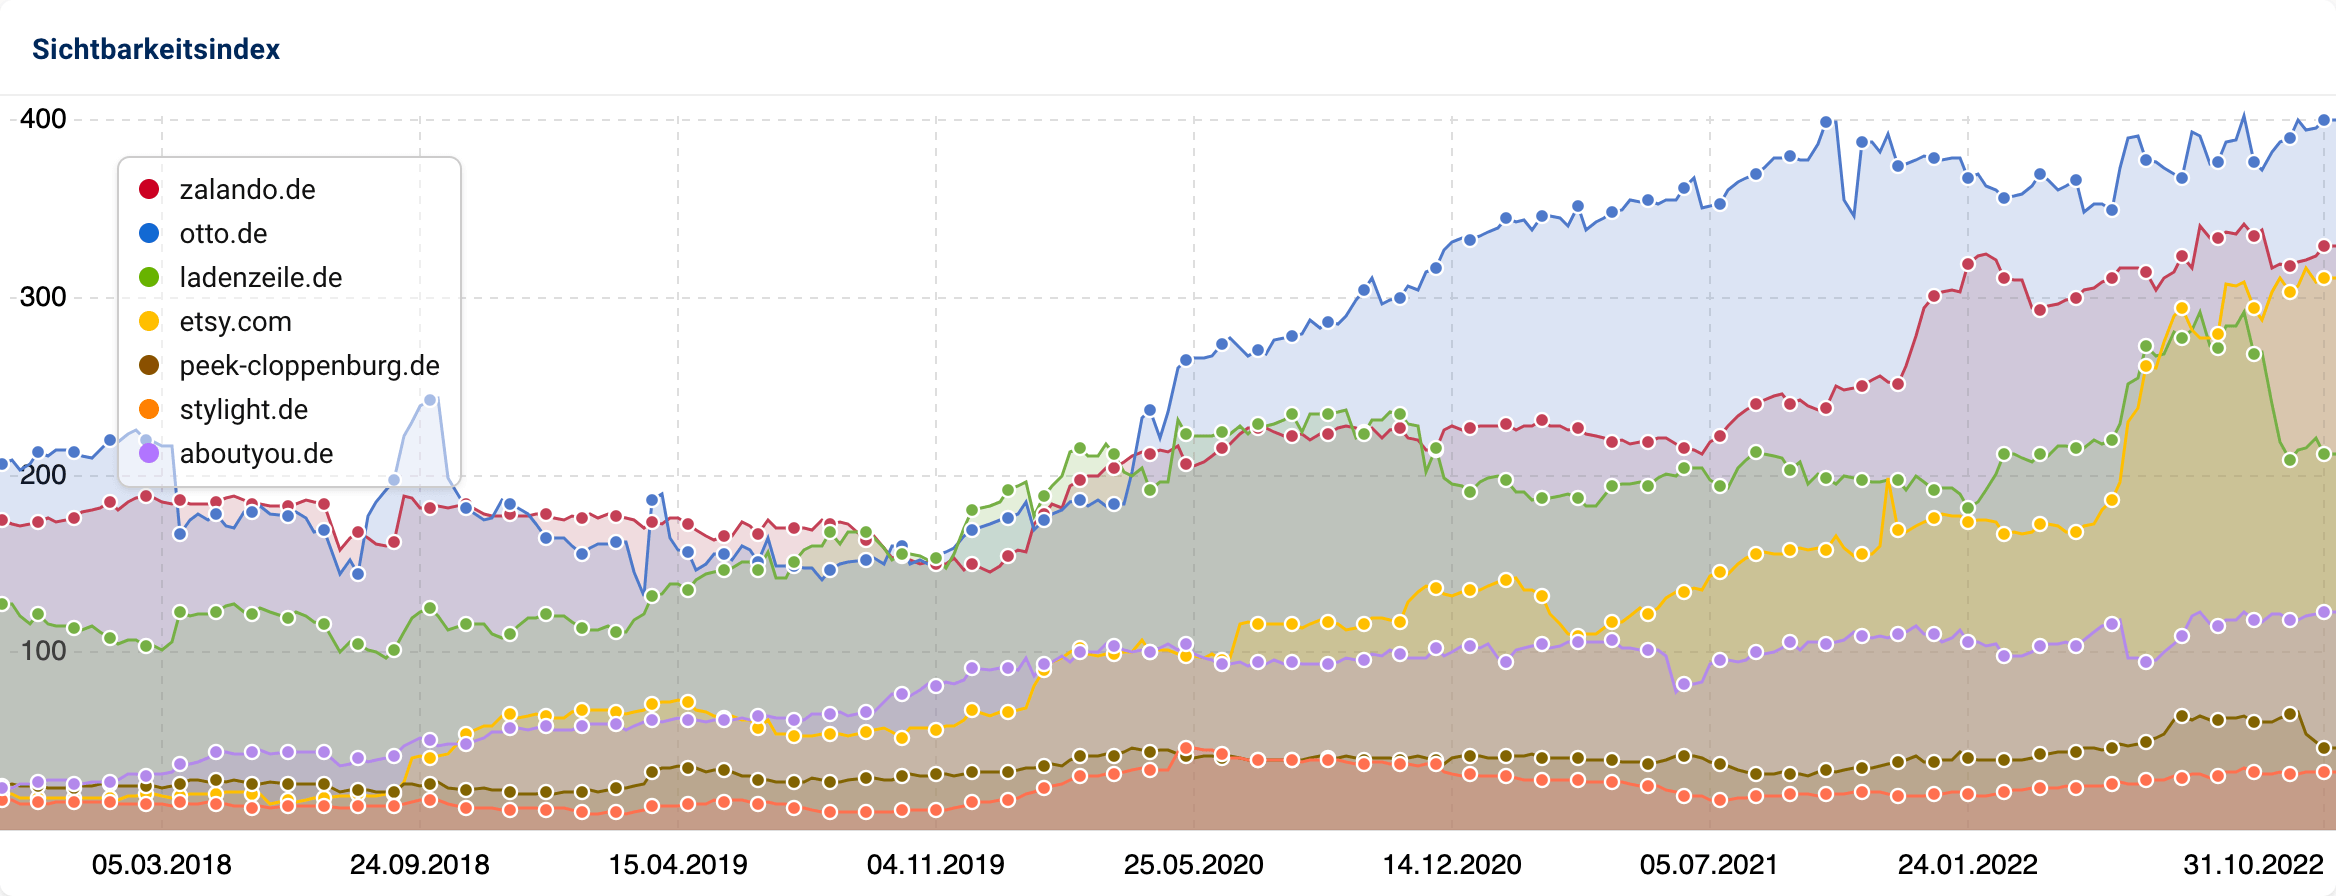 Als Graph sind die Sichtbarkeitsverläufe der sieben Domains von Anfang 2018 bis Ende 2022 zu sehen. Etwa Anfang 2020 haben alle Domains außer aboutyou.de, peek-clobbenburg.de und stylight.de noch einmal an Sichtbarkeit gewonnen.